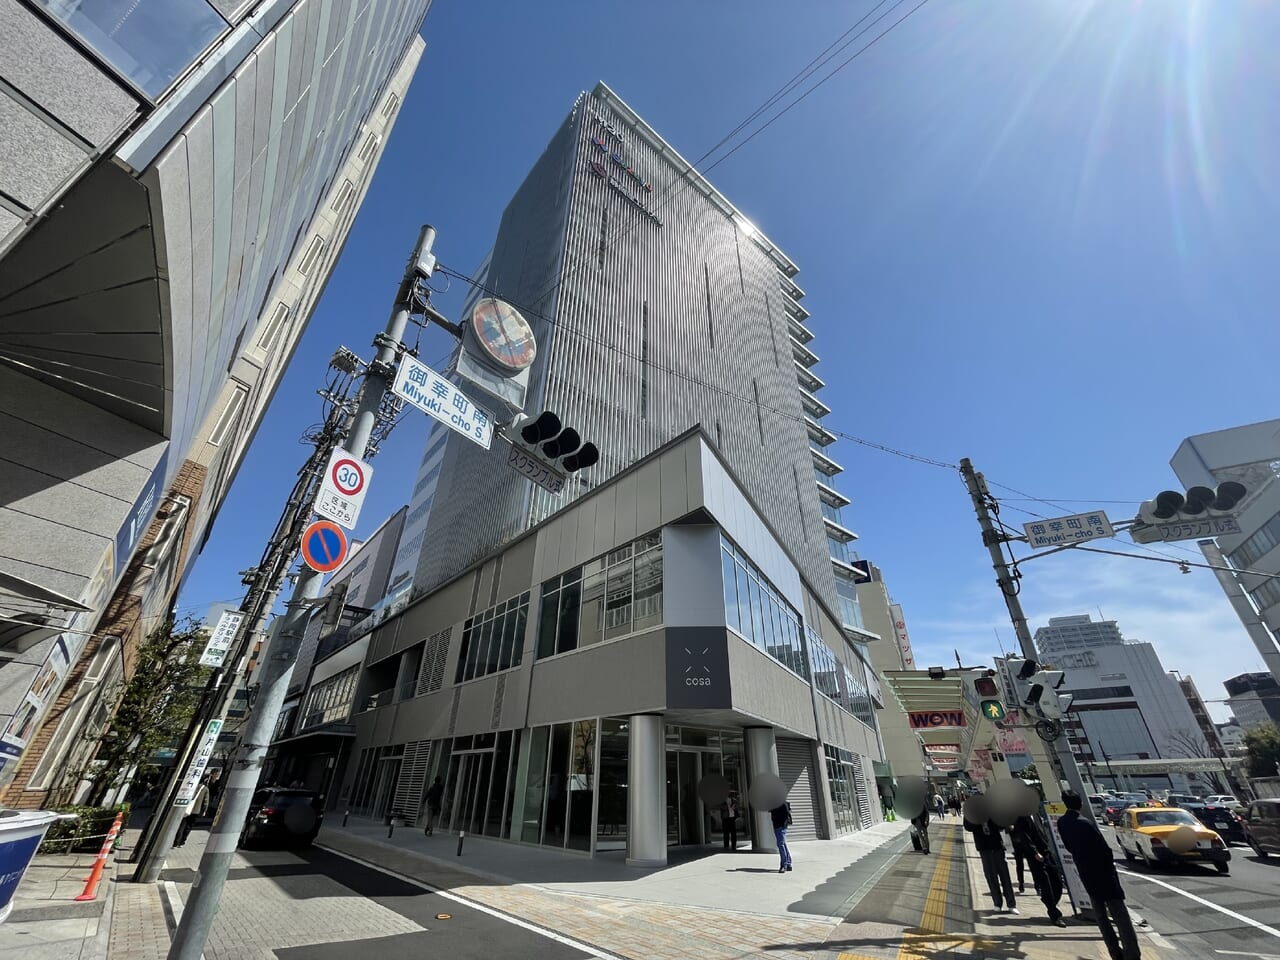 高層・商業施設ビルM20 cosaが静岡駅北口に開業